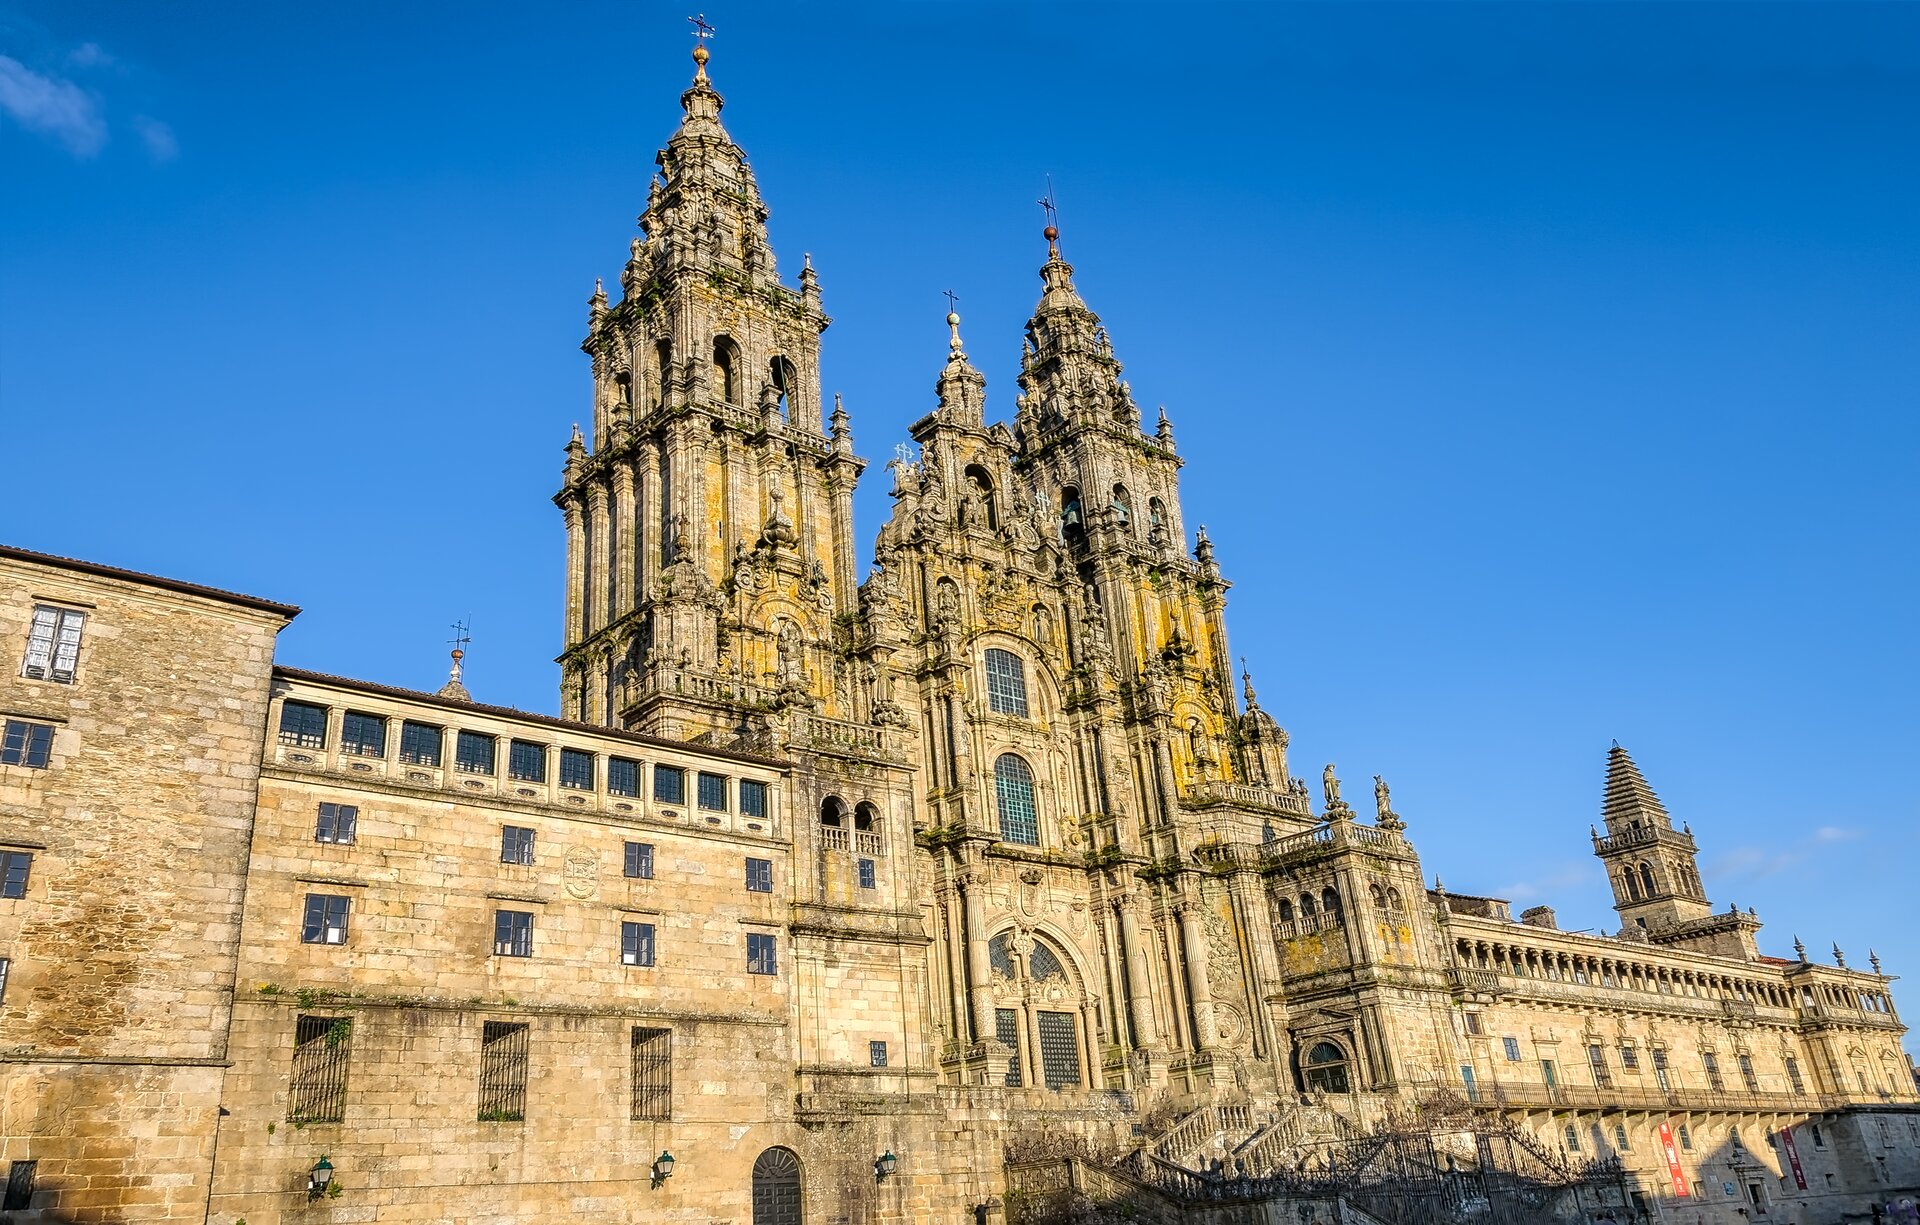 Ilustracja przedstawiająca katedrę w Santiago de Compostela w Hiszpanii. Dwupoziomowy kościół jest trójnawową bazyliką z szerokim transeptem oraz prezbiterium z półkolistą apsydą. Zachodnią fasadę znana jako Fachada de la Plaza del Obradoiro flankują dwie średniowieczne wieże wzbogacone obfitą dekoracją rzeźbiarską z XVIII wieku. Wzniesione na planie kwadratu, mają wysokość 76 metrów. Wejście główne do górnego kościoła poprzedza niewielki kwadratowy plac, do którego prowadzą ciągi schodów.